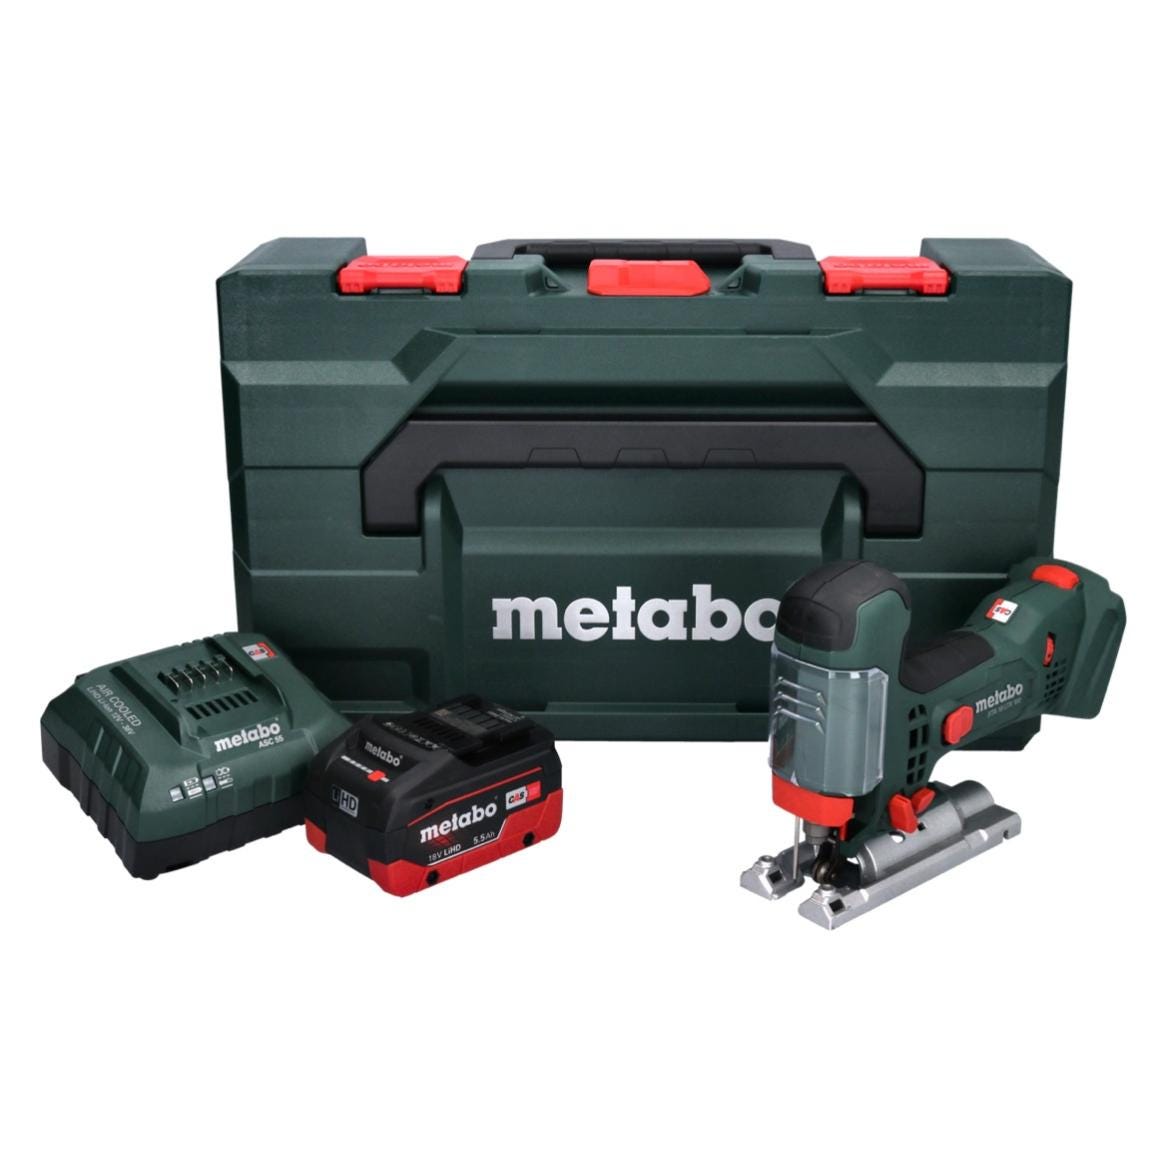 Metabo STA 18 LTX 100 Scie sauteuse sans fil 18V ( 601002840 ) + 1x Batterie 5,5Ah + Chargeur + Coffret de transport 0